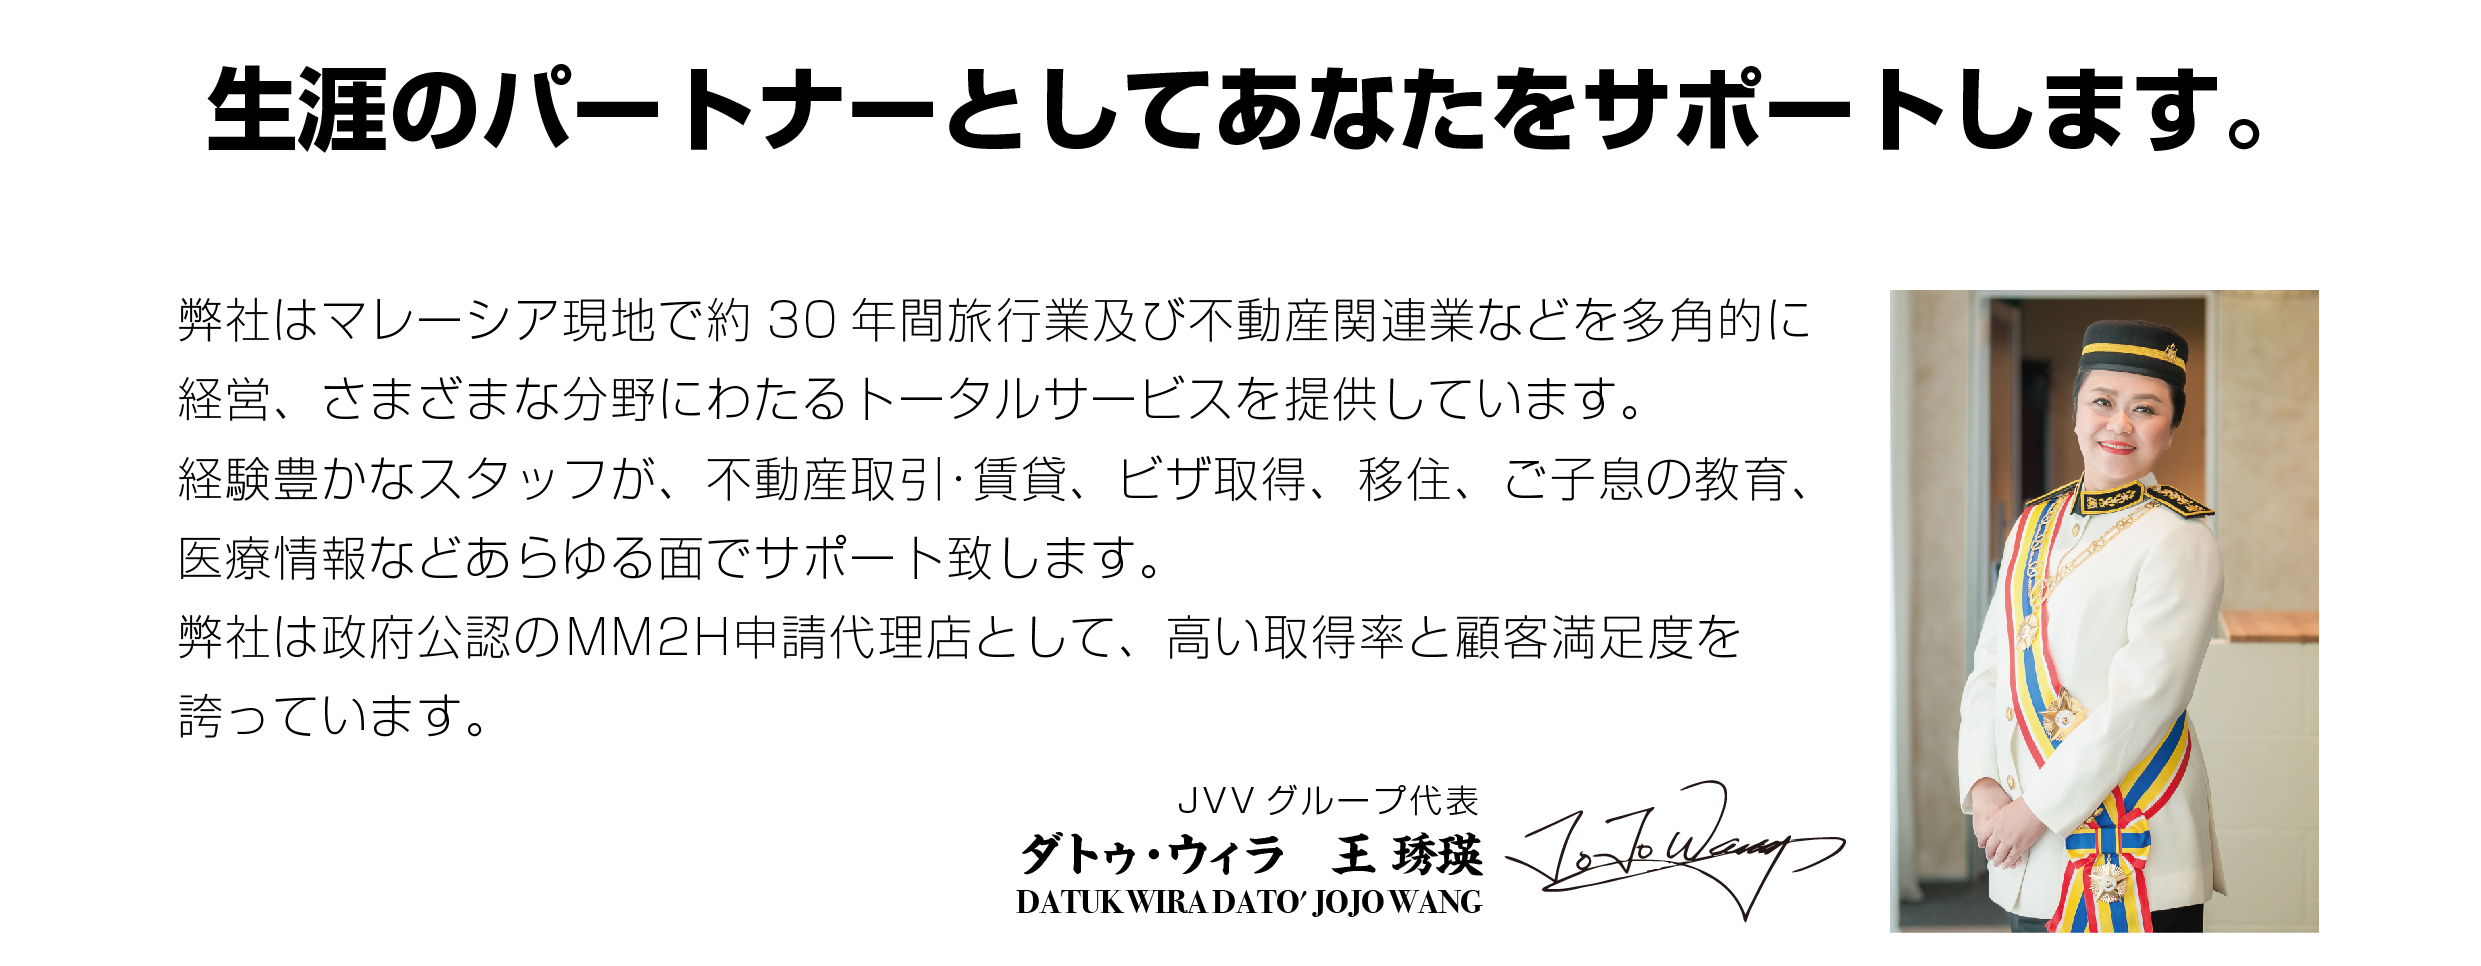 2020 JVV日本官網-MM2H申請流程(日)-07